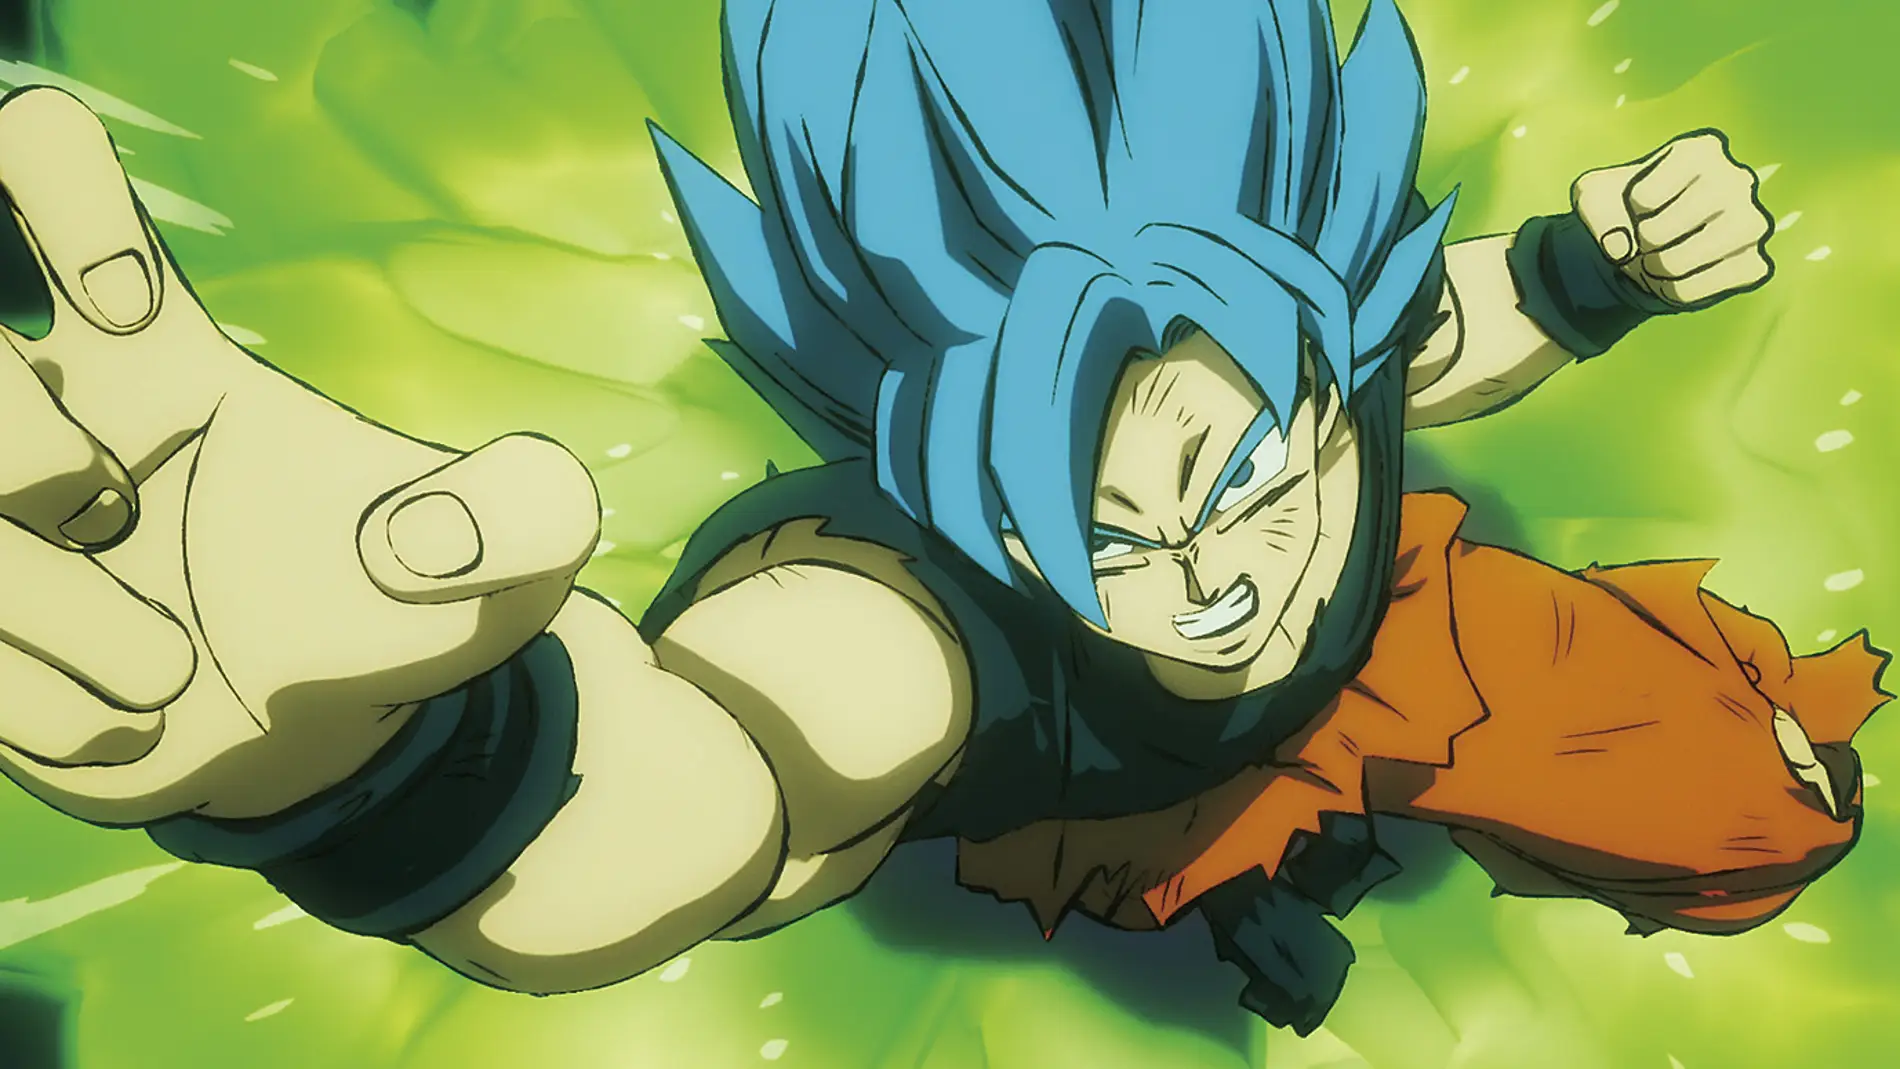 Resultado de imagem para son goku normal  Goku transformaciones, Dibujos,  Imagenes de alicia